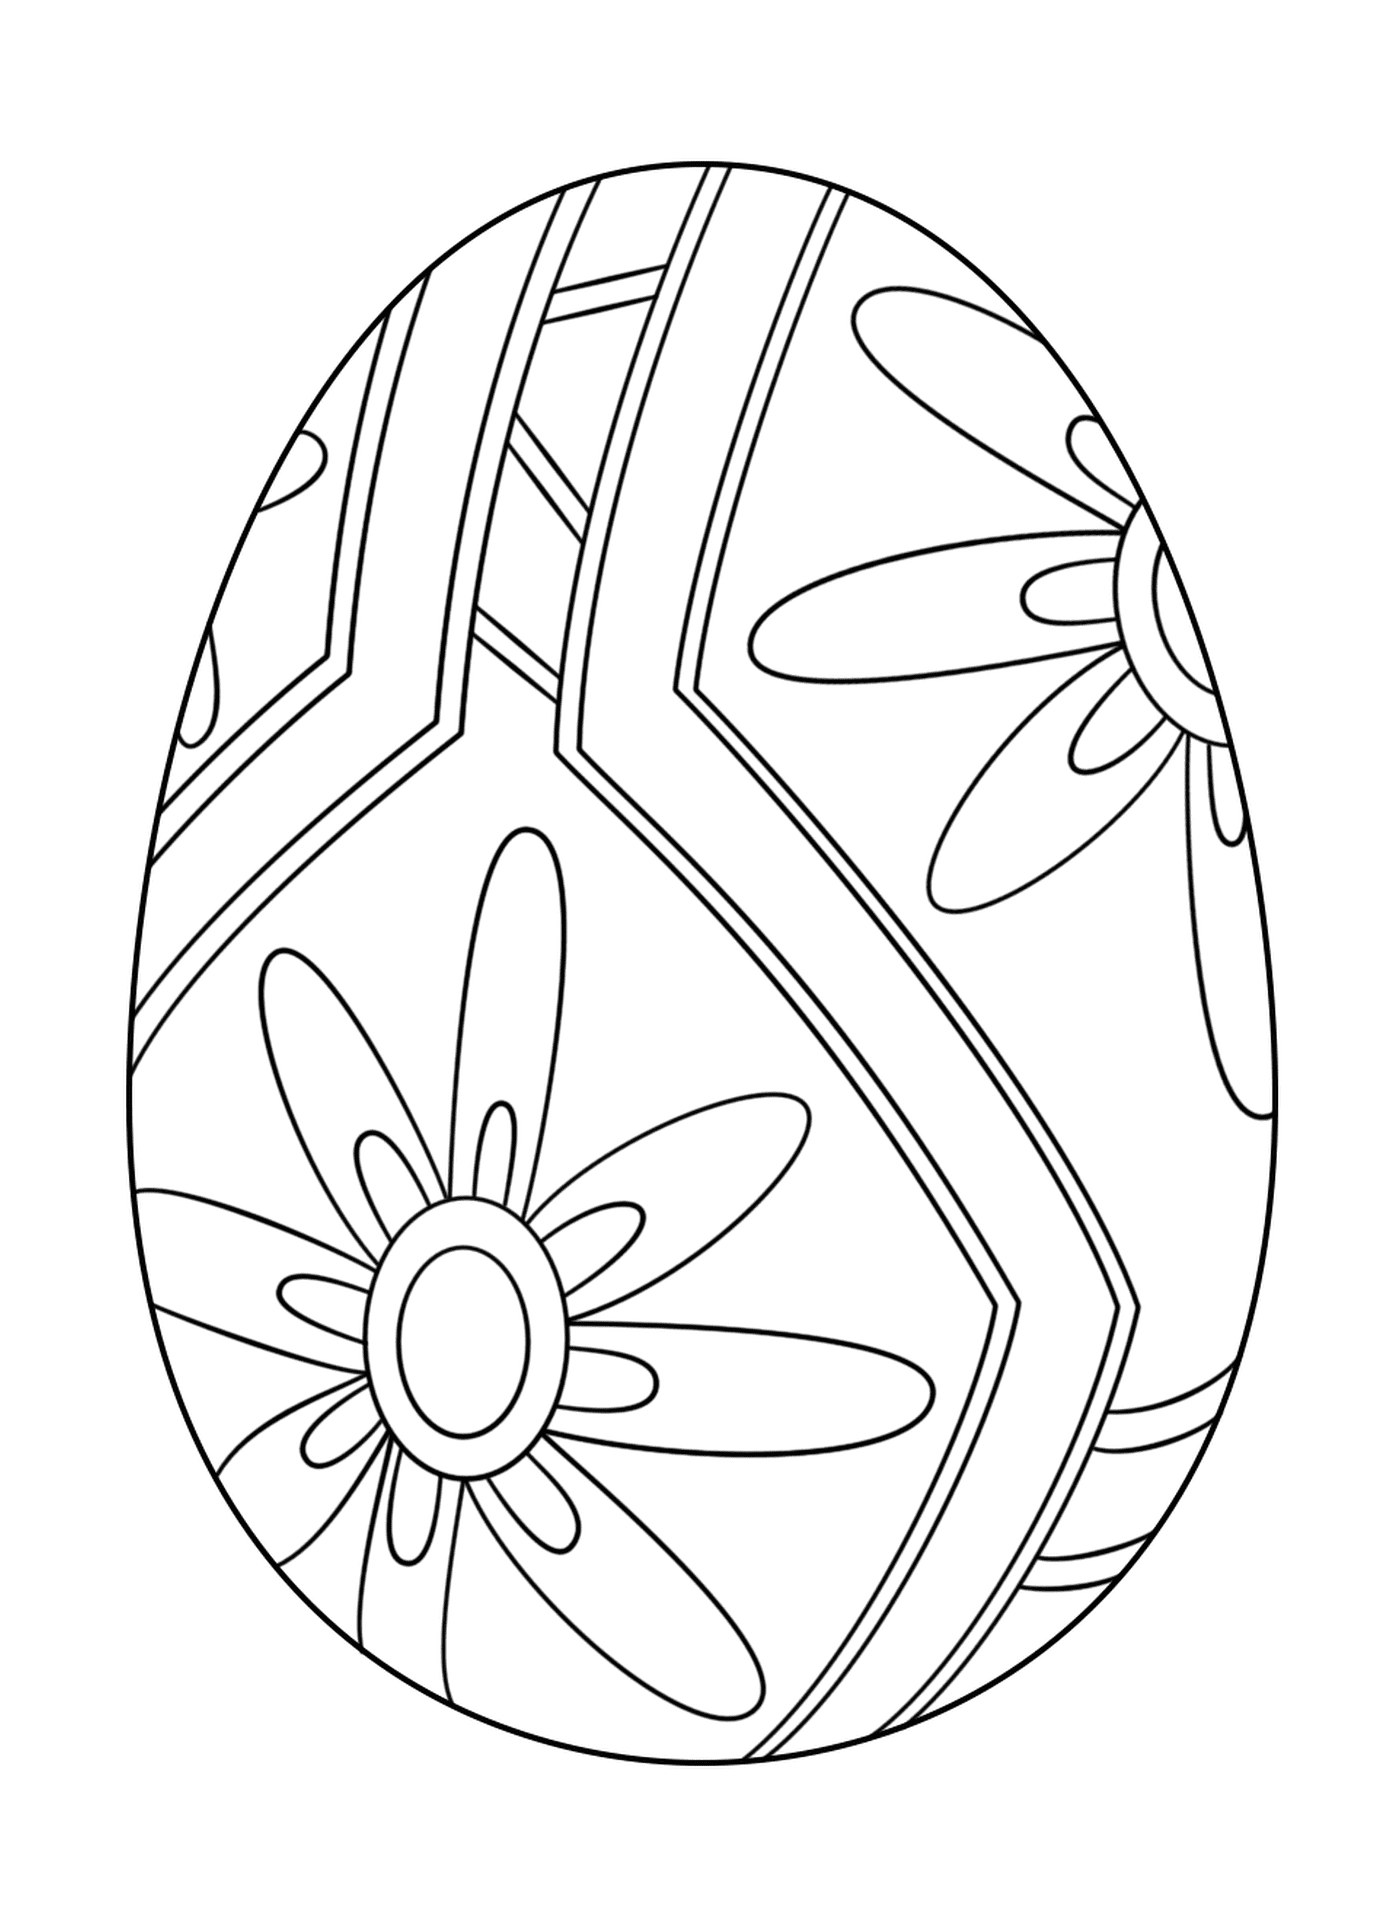  Huevo de Pascua con patrón floral 1 